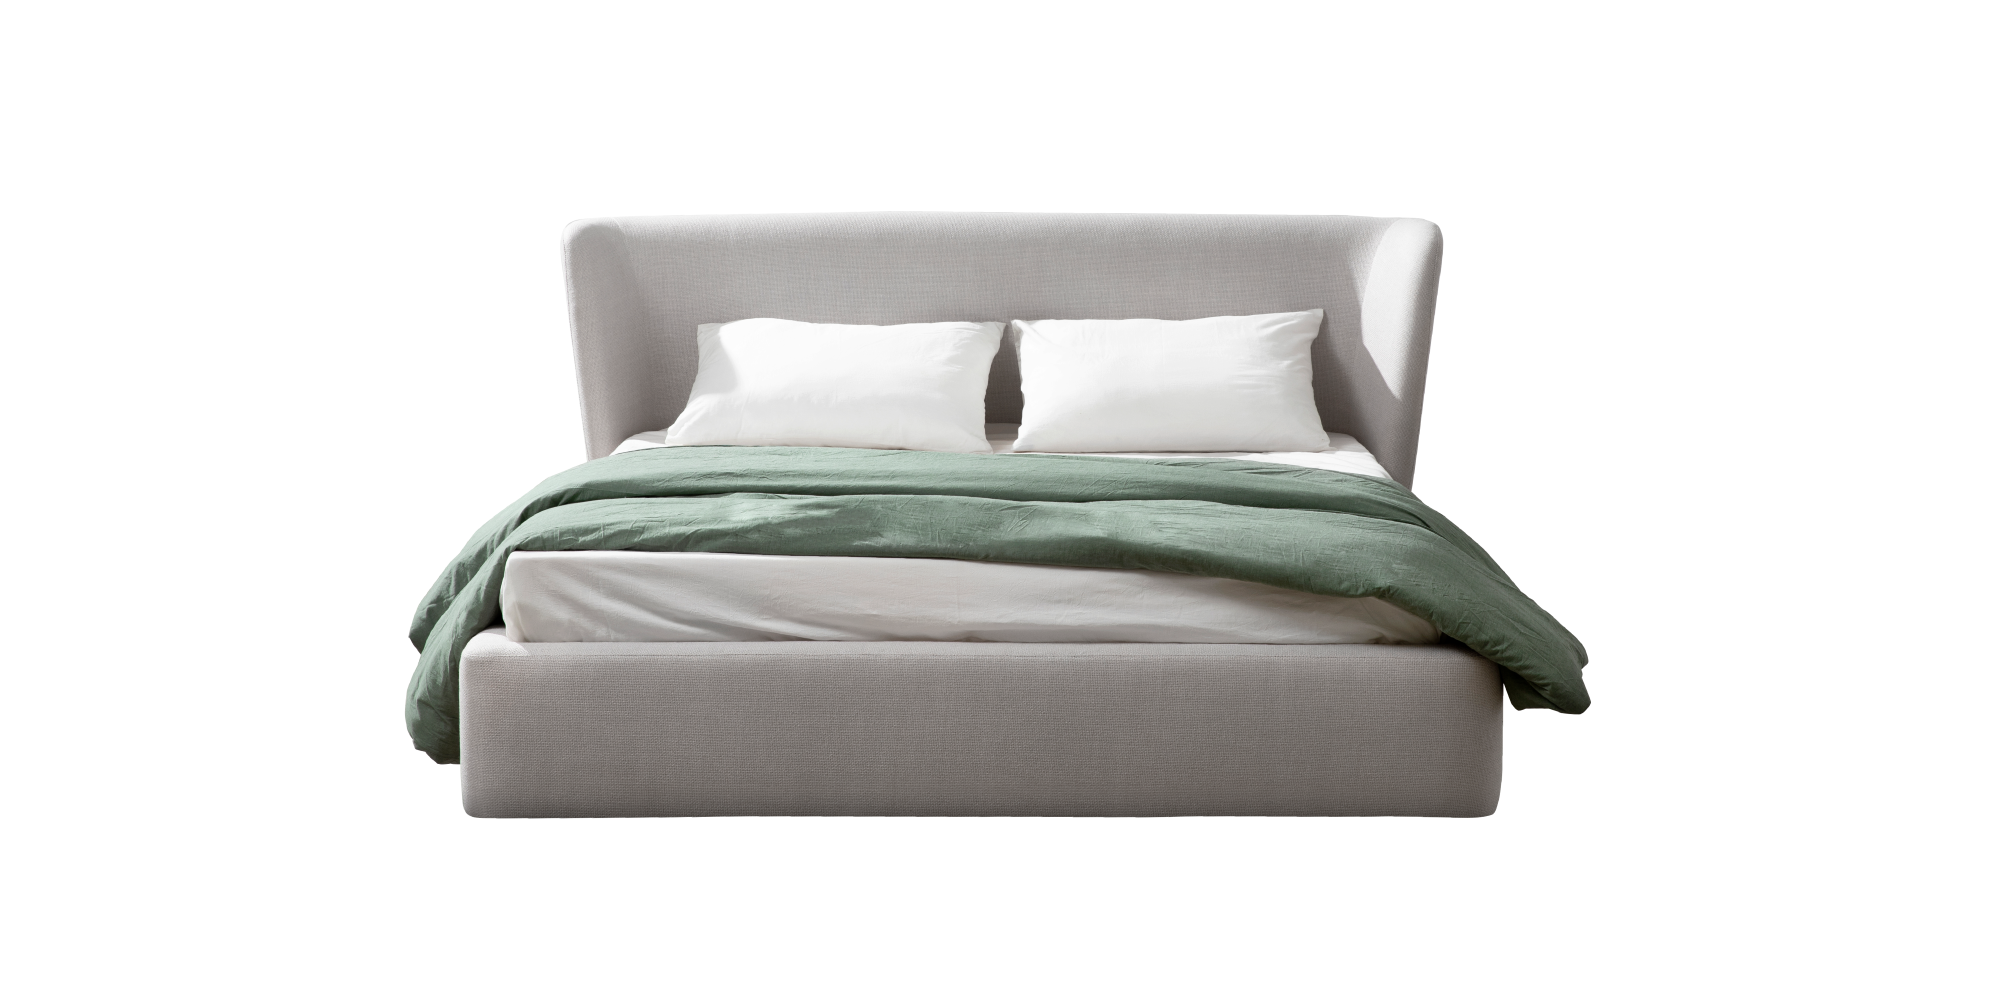 Z-B04 bed / 1800